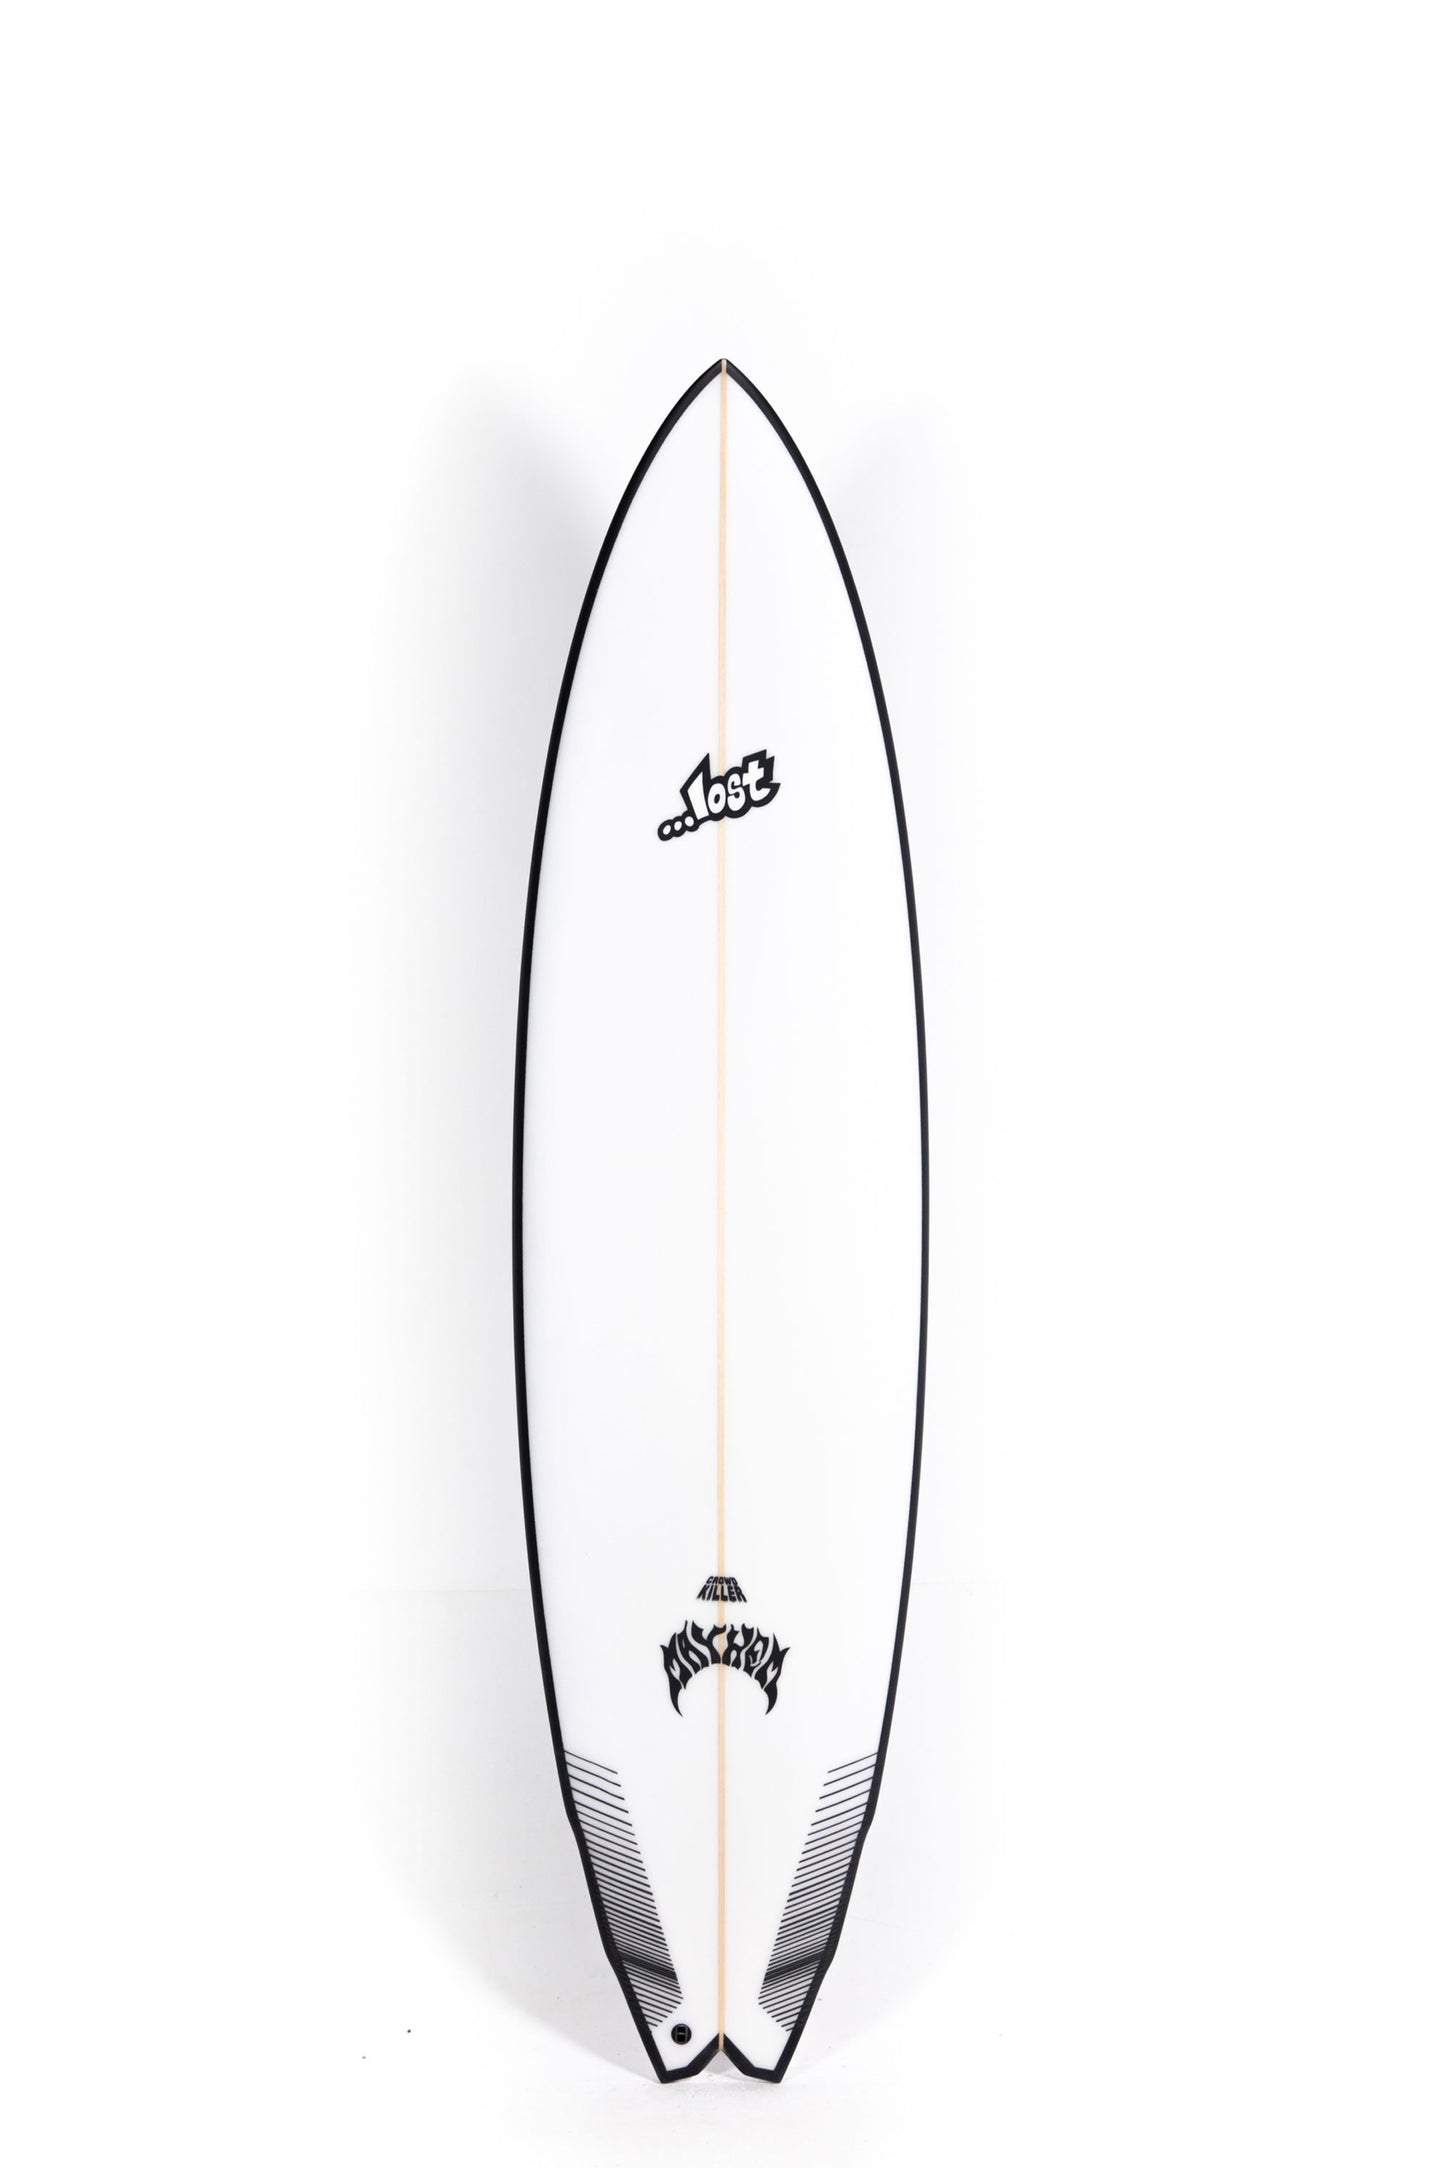 Pukas-Surf-Shop-Lost-Surfboards-Crowd-Killer-Matt-Biolos-7_6